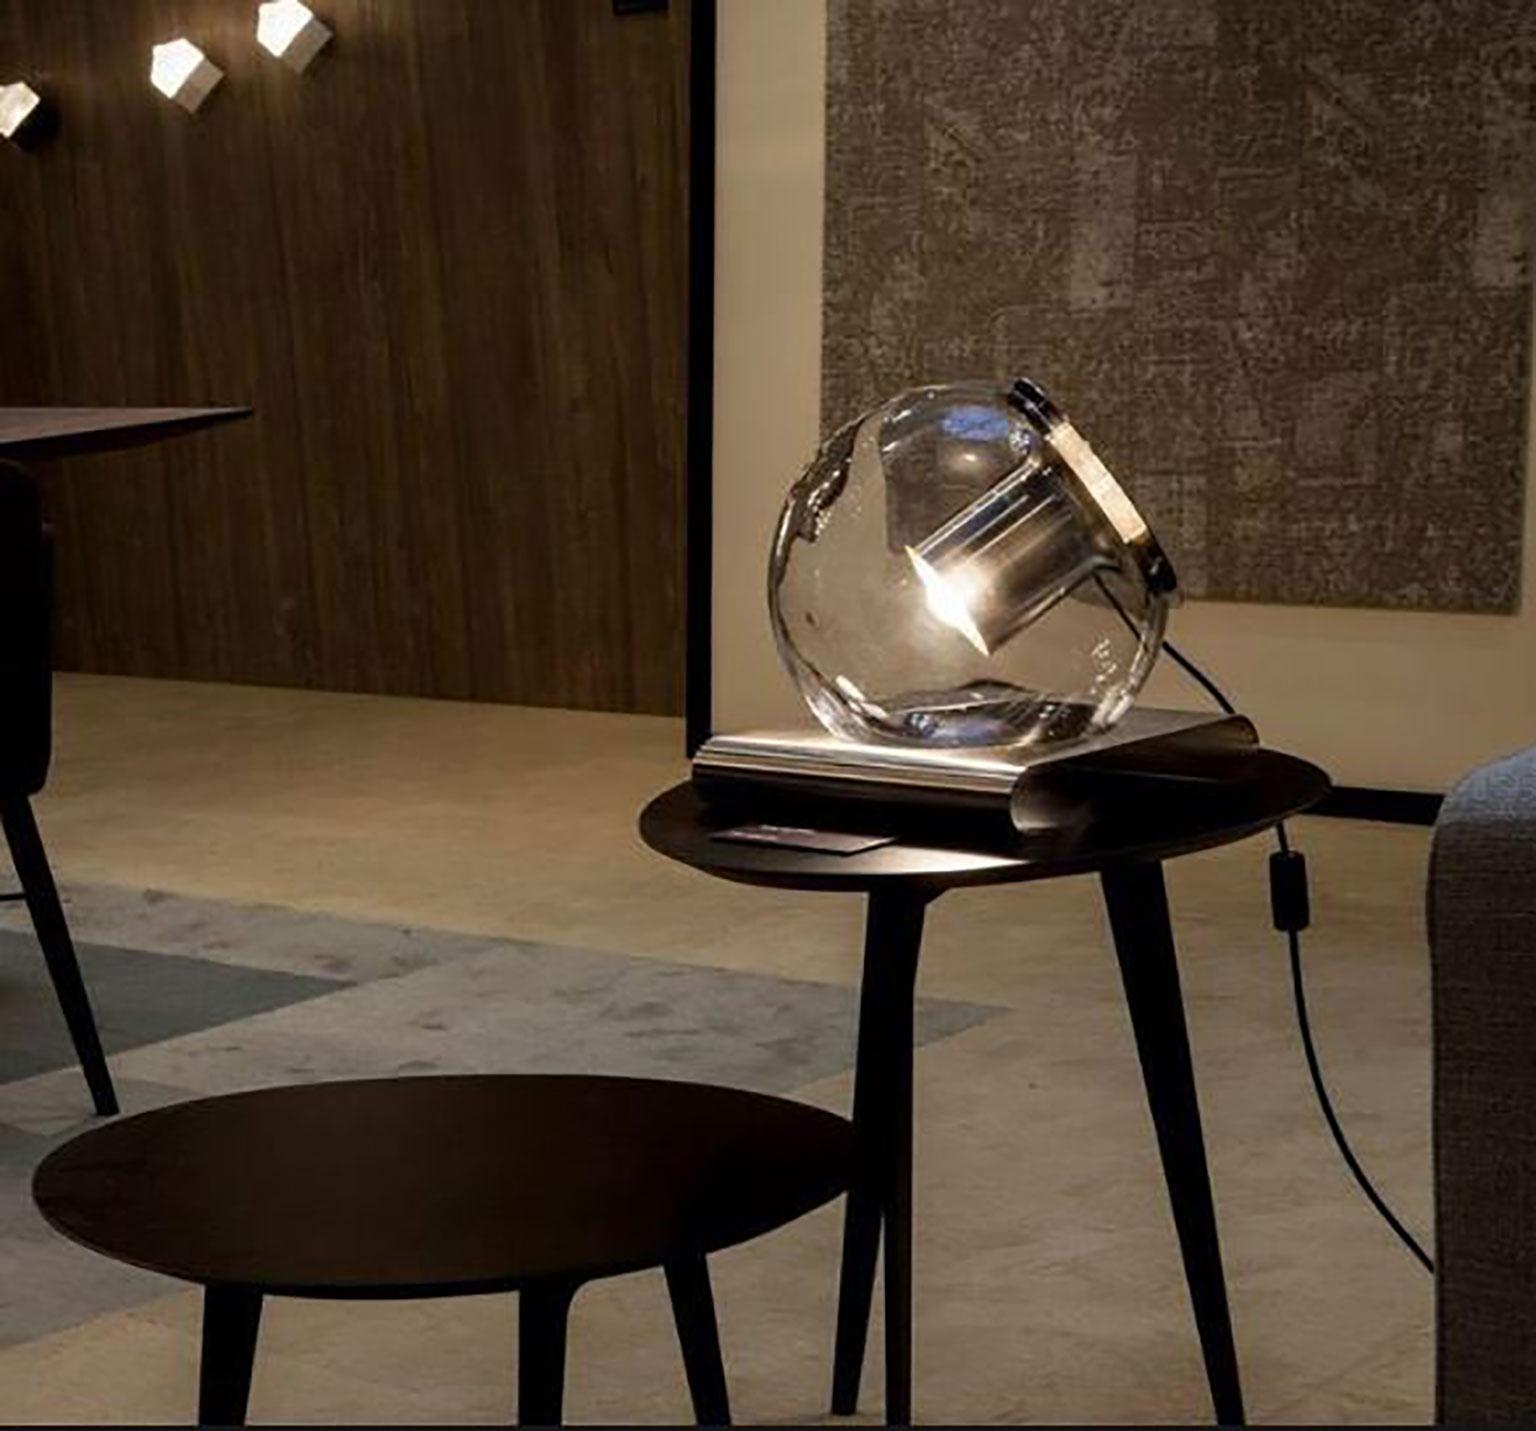 La lampe de table Globe conçue par Joe Colombo pour Oluce. Il s'agit d'un design simpliste et attrayant fabriqué à partir de verre soufflé à la main, produisant une lumière ambiante remarquable à l'aide d'un réflecteur métallique interne. Le